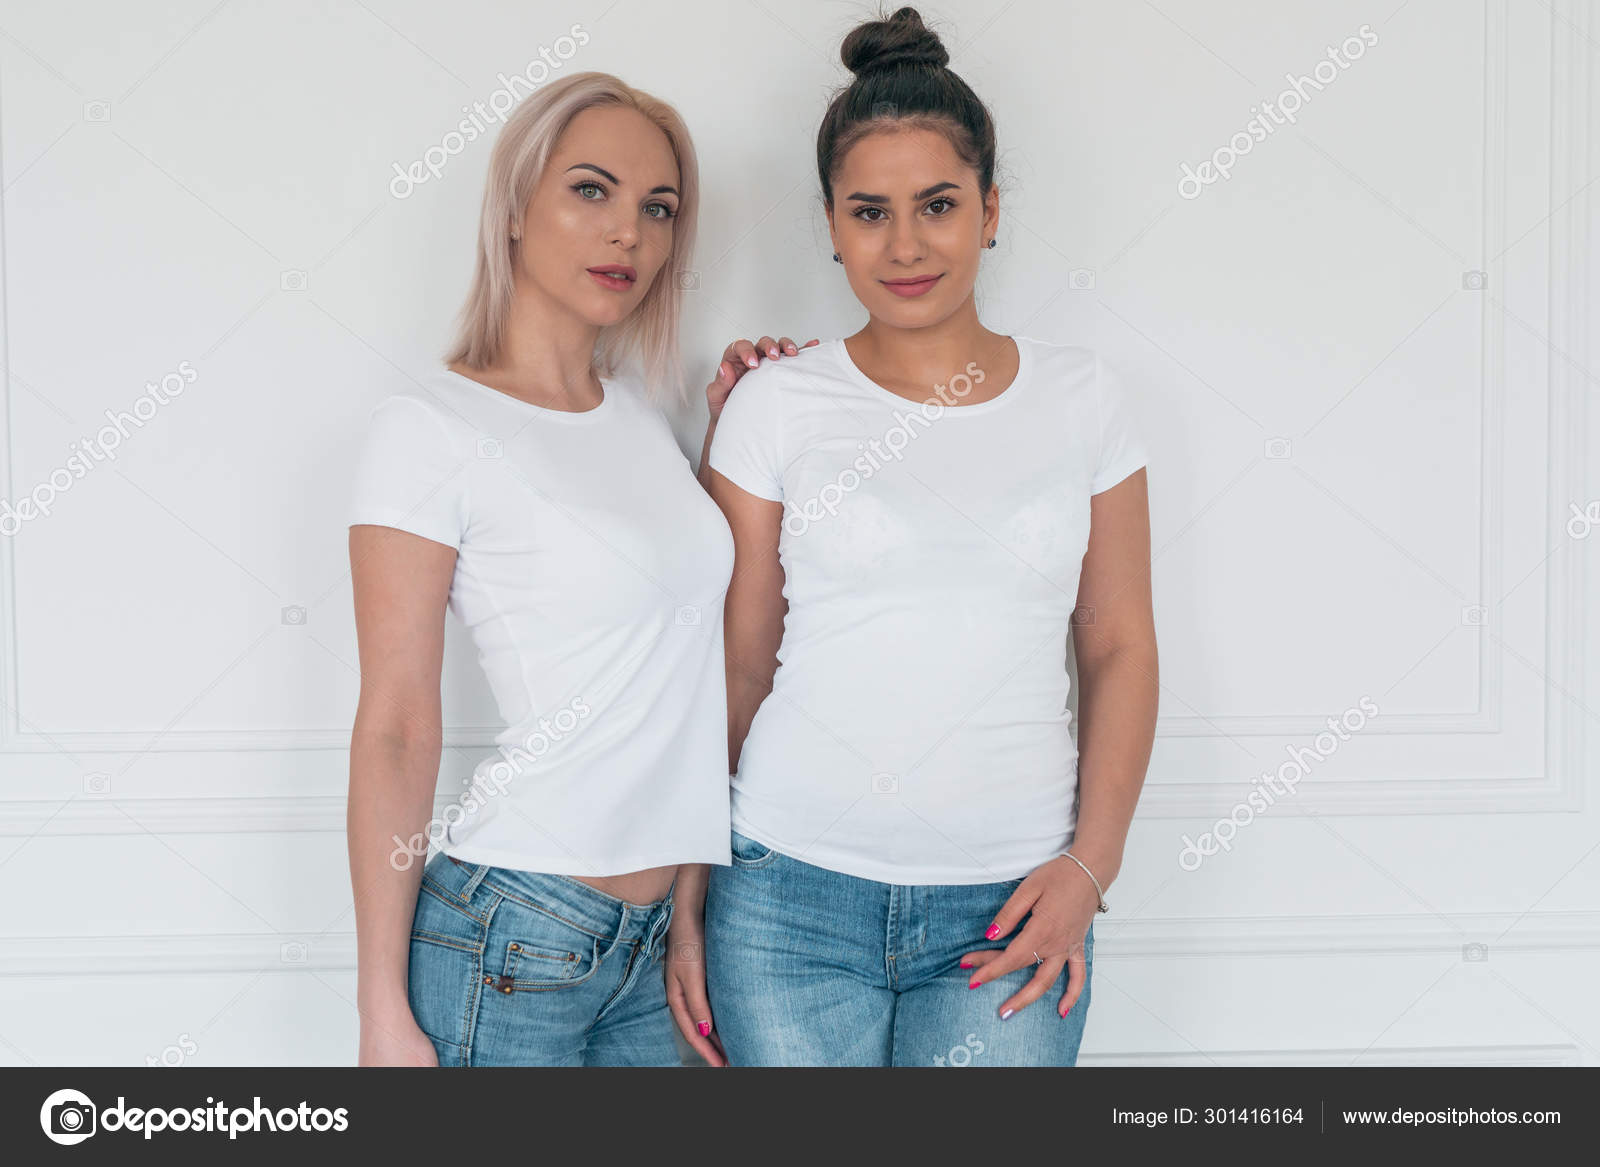 Portræt af to veninder blonde brunette i hvide uden Stock-foto © 2735369.mail.ru #301416164